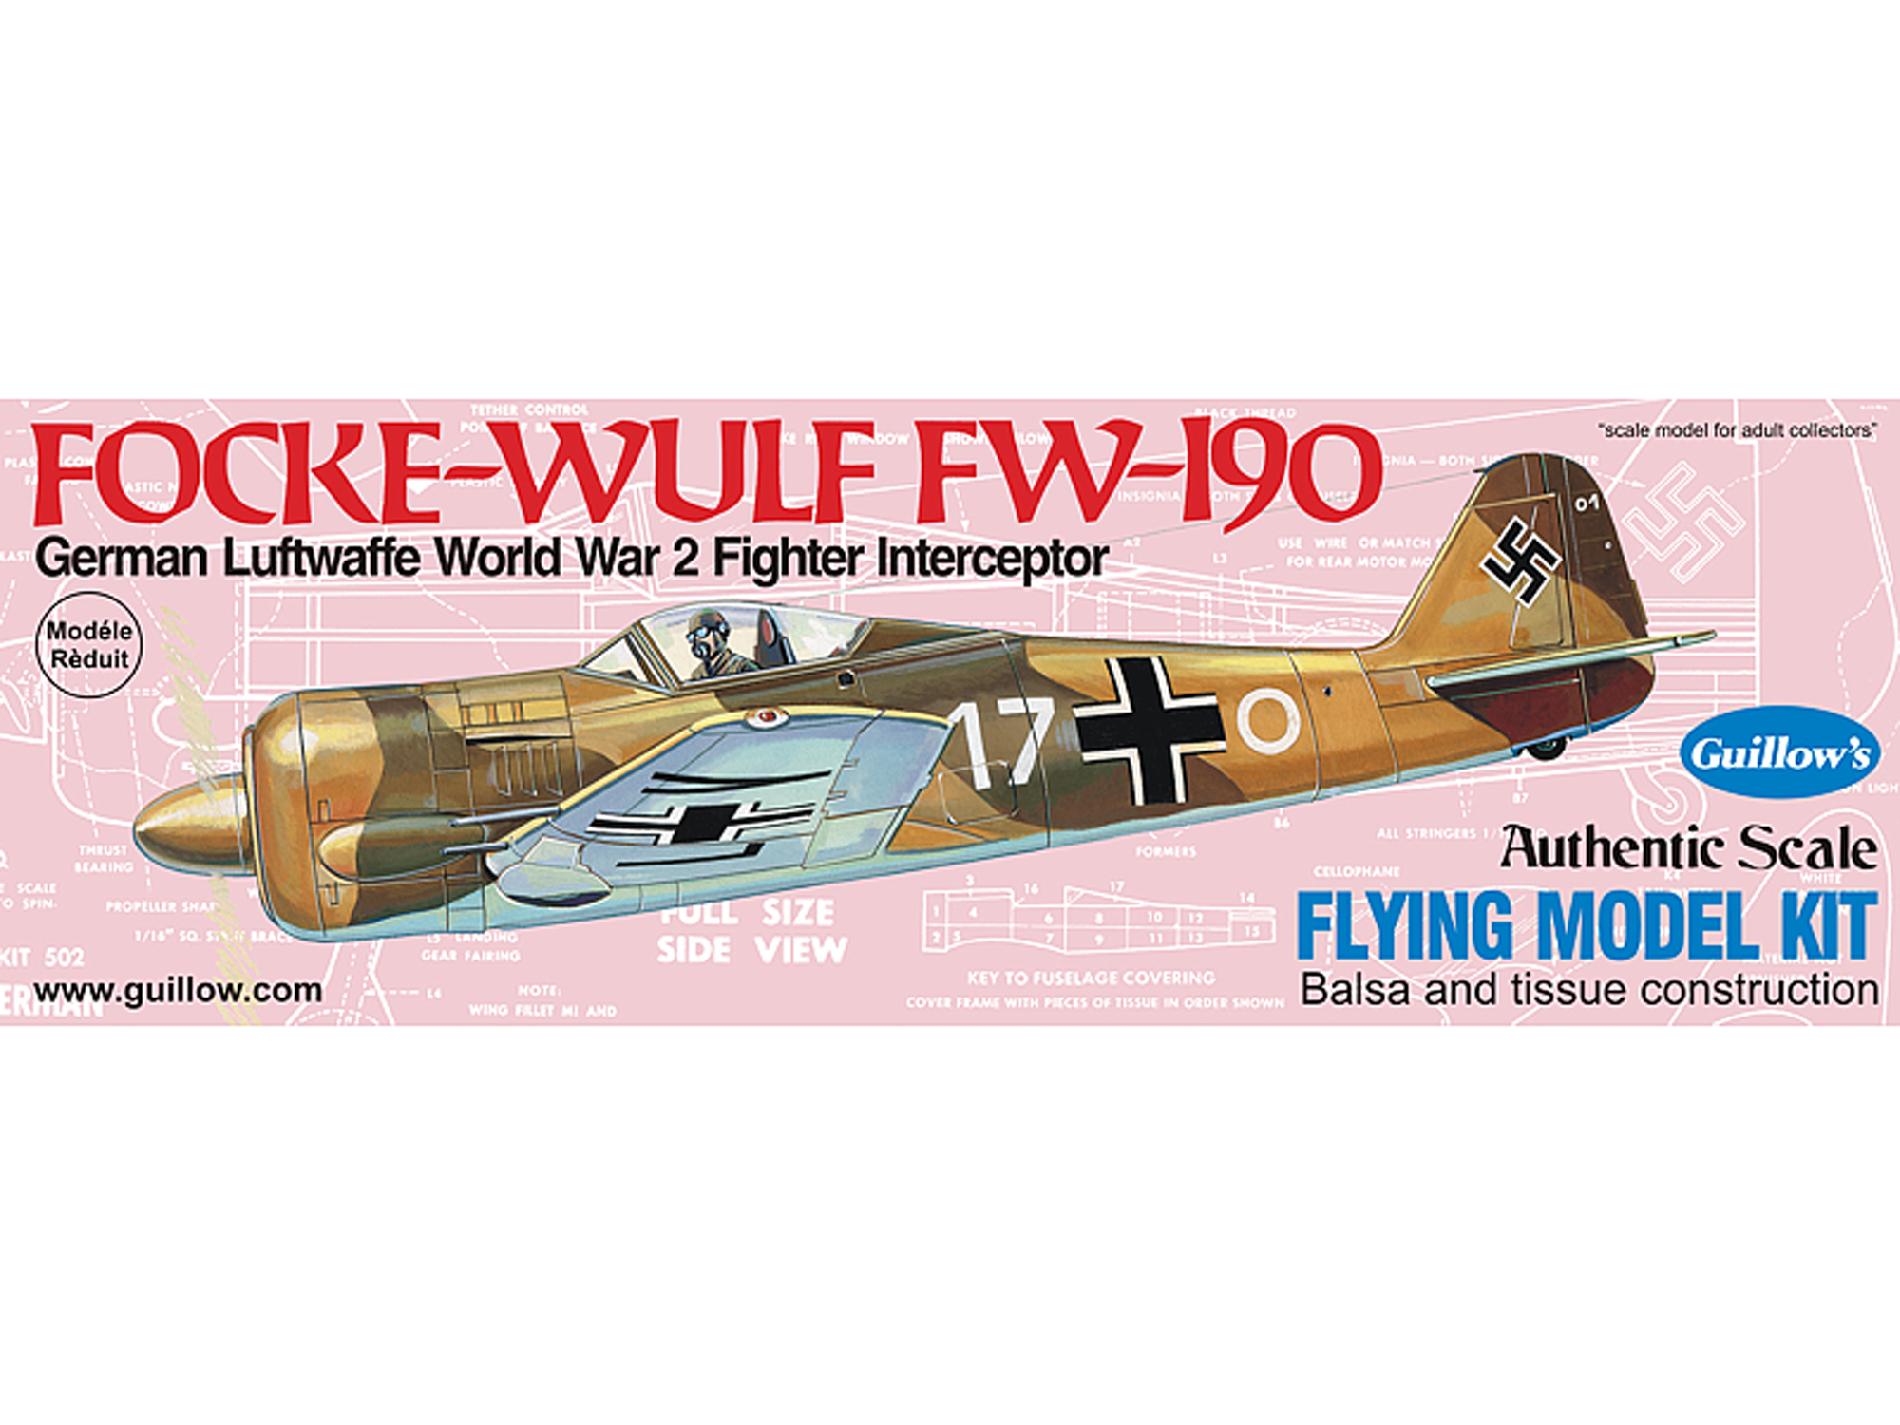 Guillow's Focke-Wulf FW-190 Model Kit